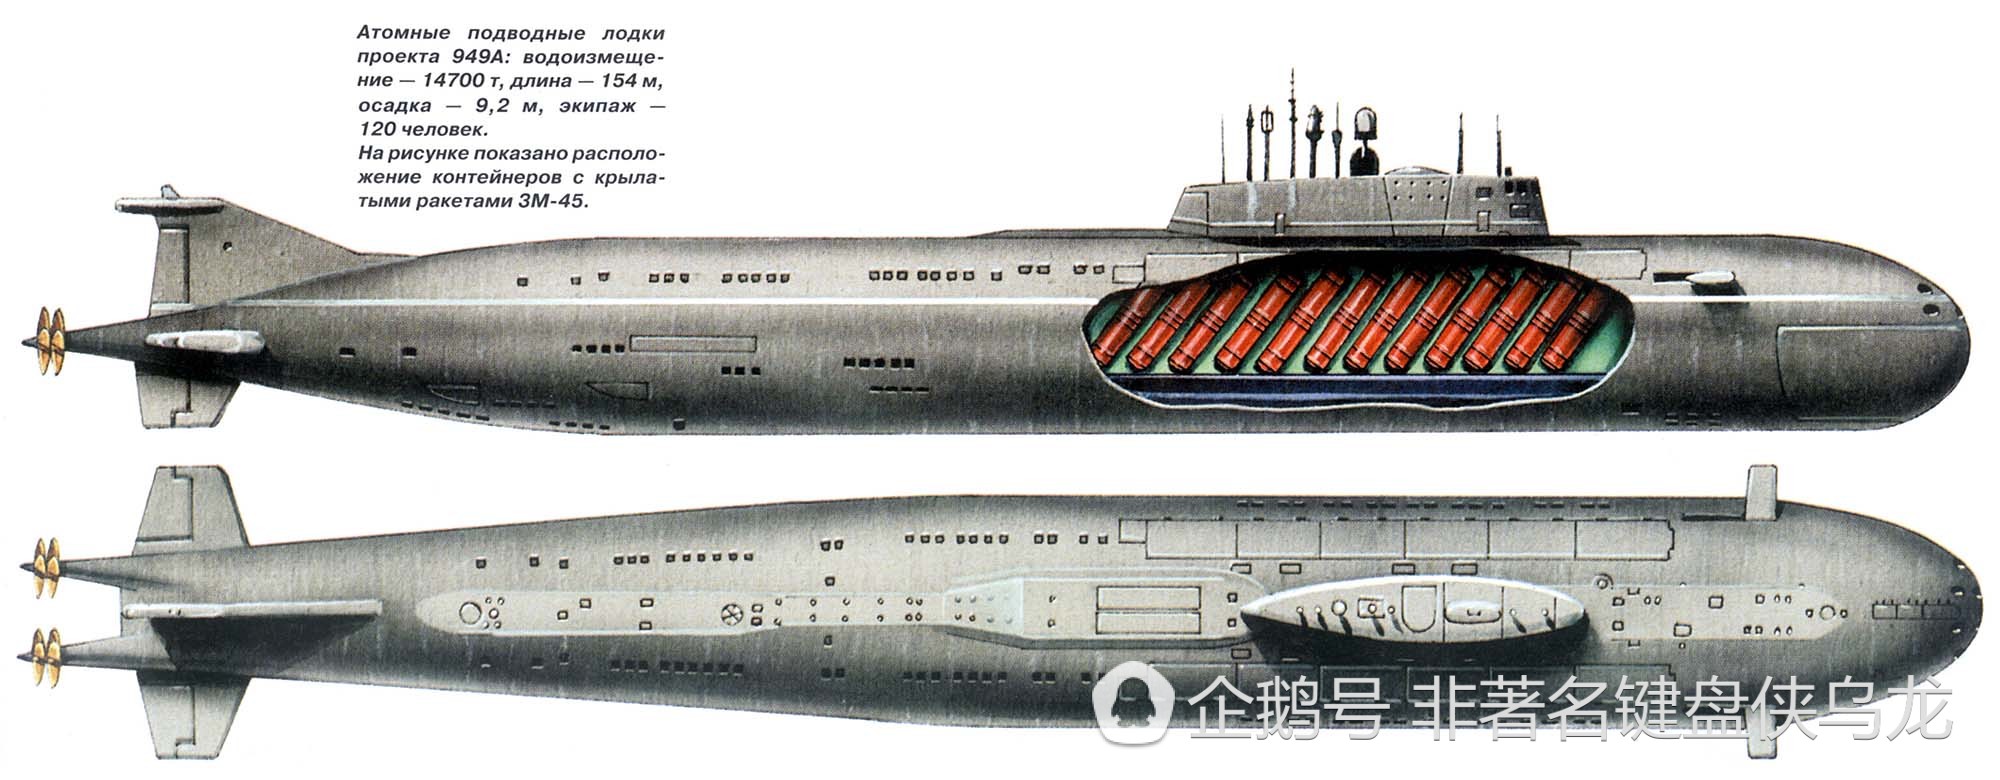 949型“安泰”/奥斯卡级巡航导弹核潜艇图片